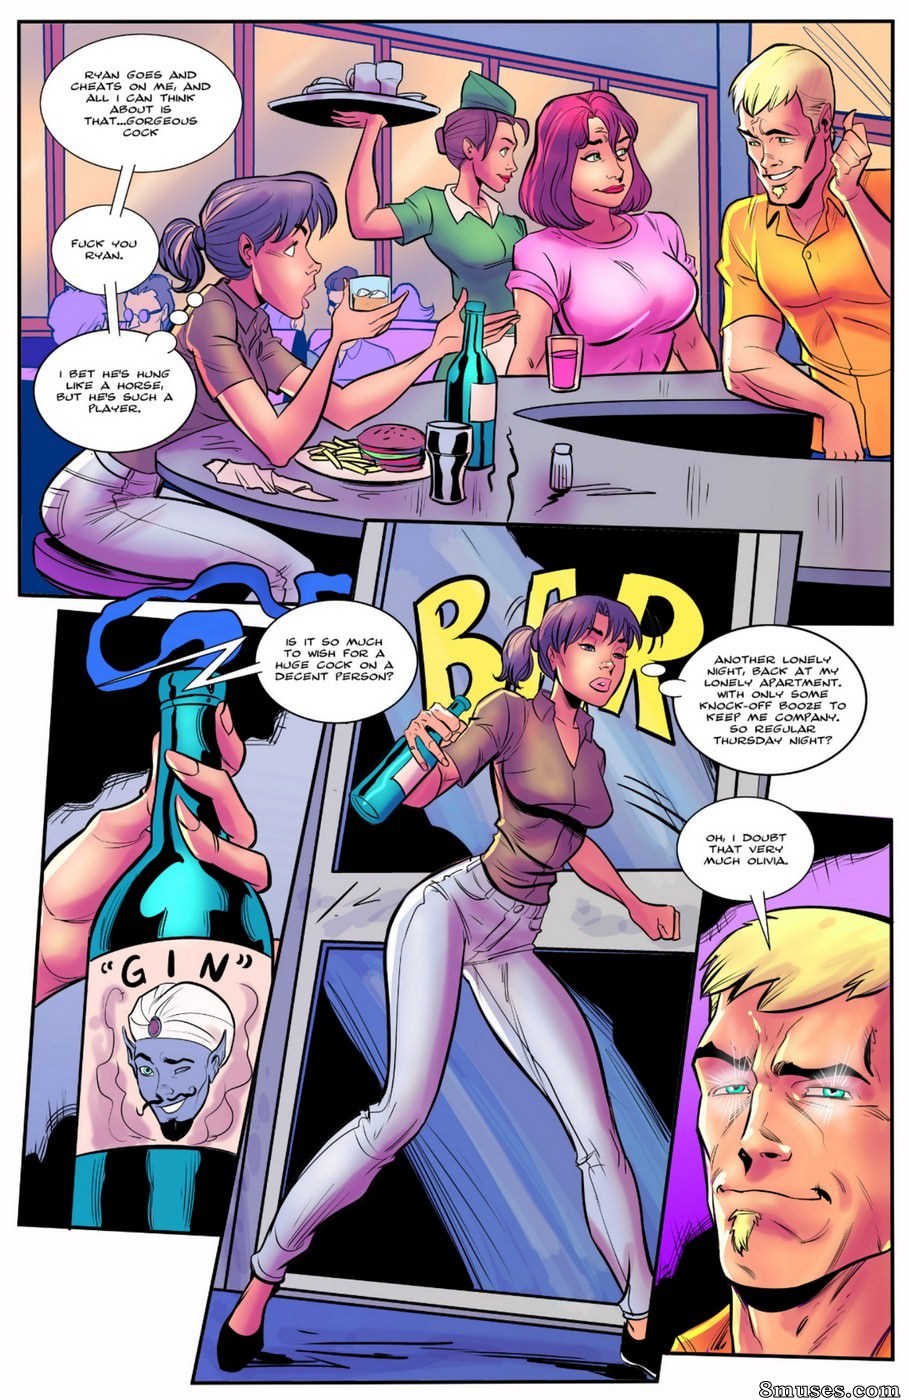 Horse Dickgirl Sex Comics - Futa & Friends Issue 1 - 8muses Comics - Sex Comics and Porn Cartoons